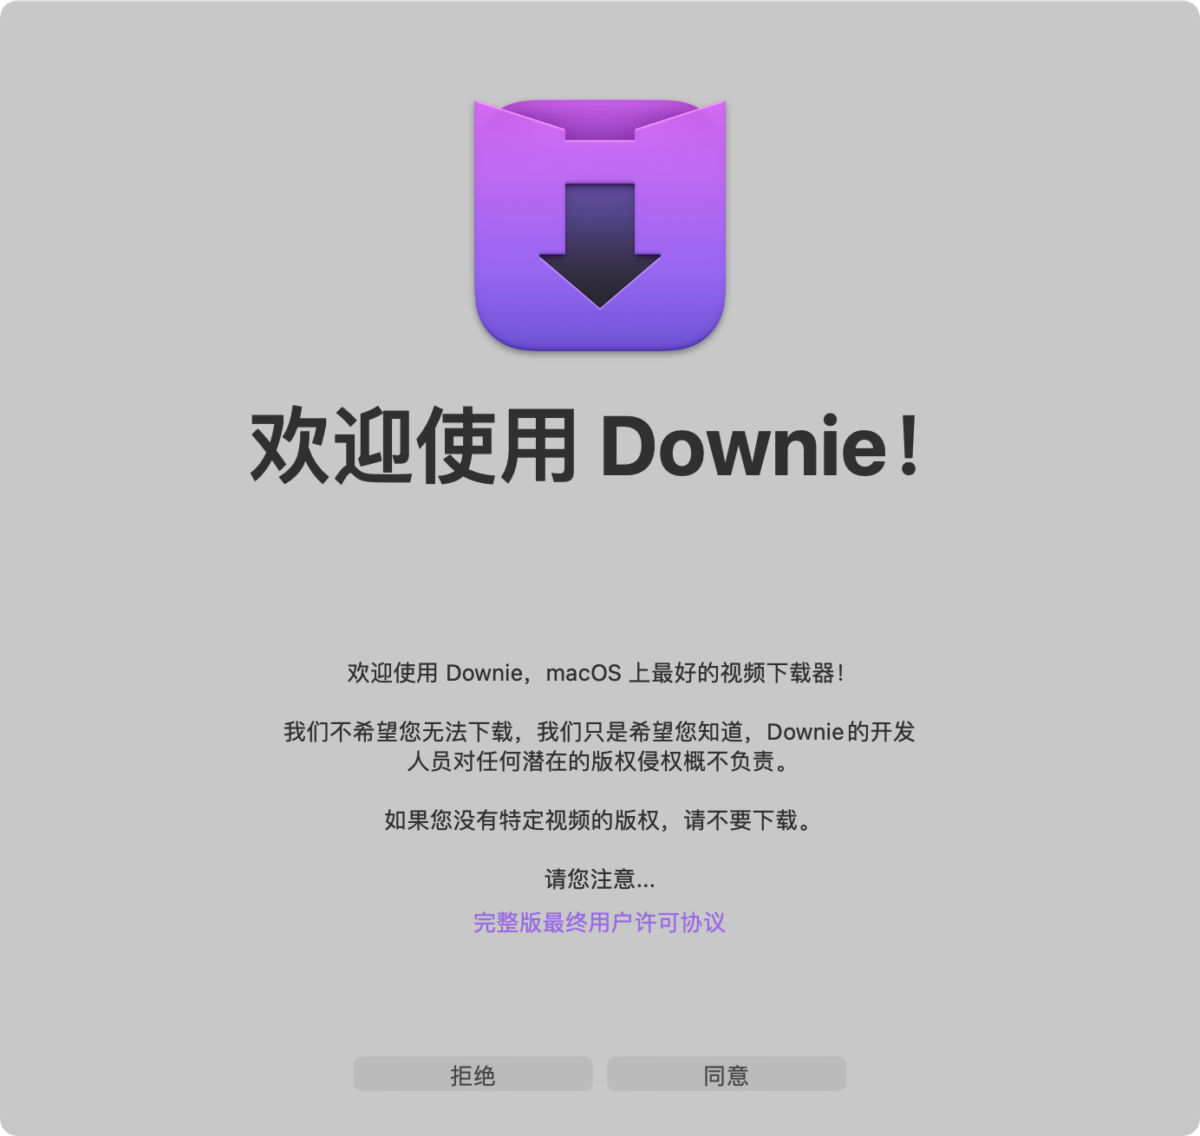 Downie 4 Mac版 视频下载神器软件截图 第1张